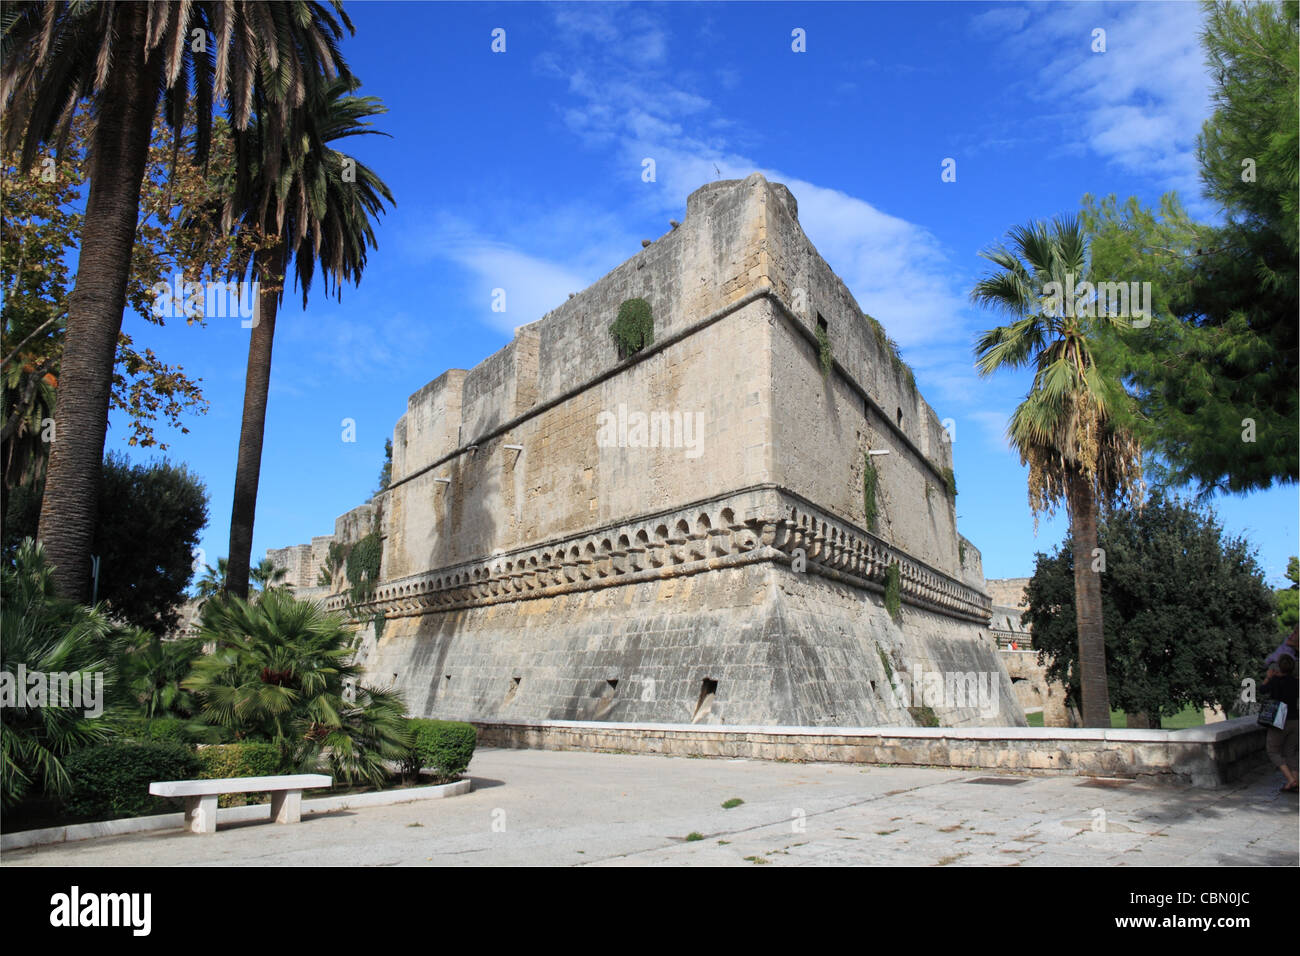 South wall of Swabian Castle, Castello Svevo, Piazza Federico 2 di Svevia, Bari Vecchia, Apulia, Puglia, Adriatic Sea, Europe Stock Photo